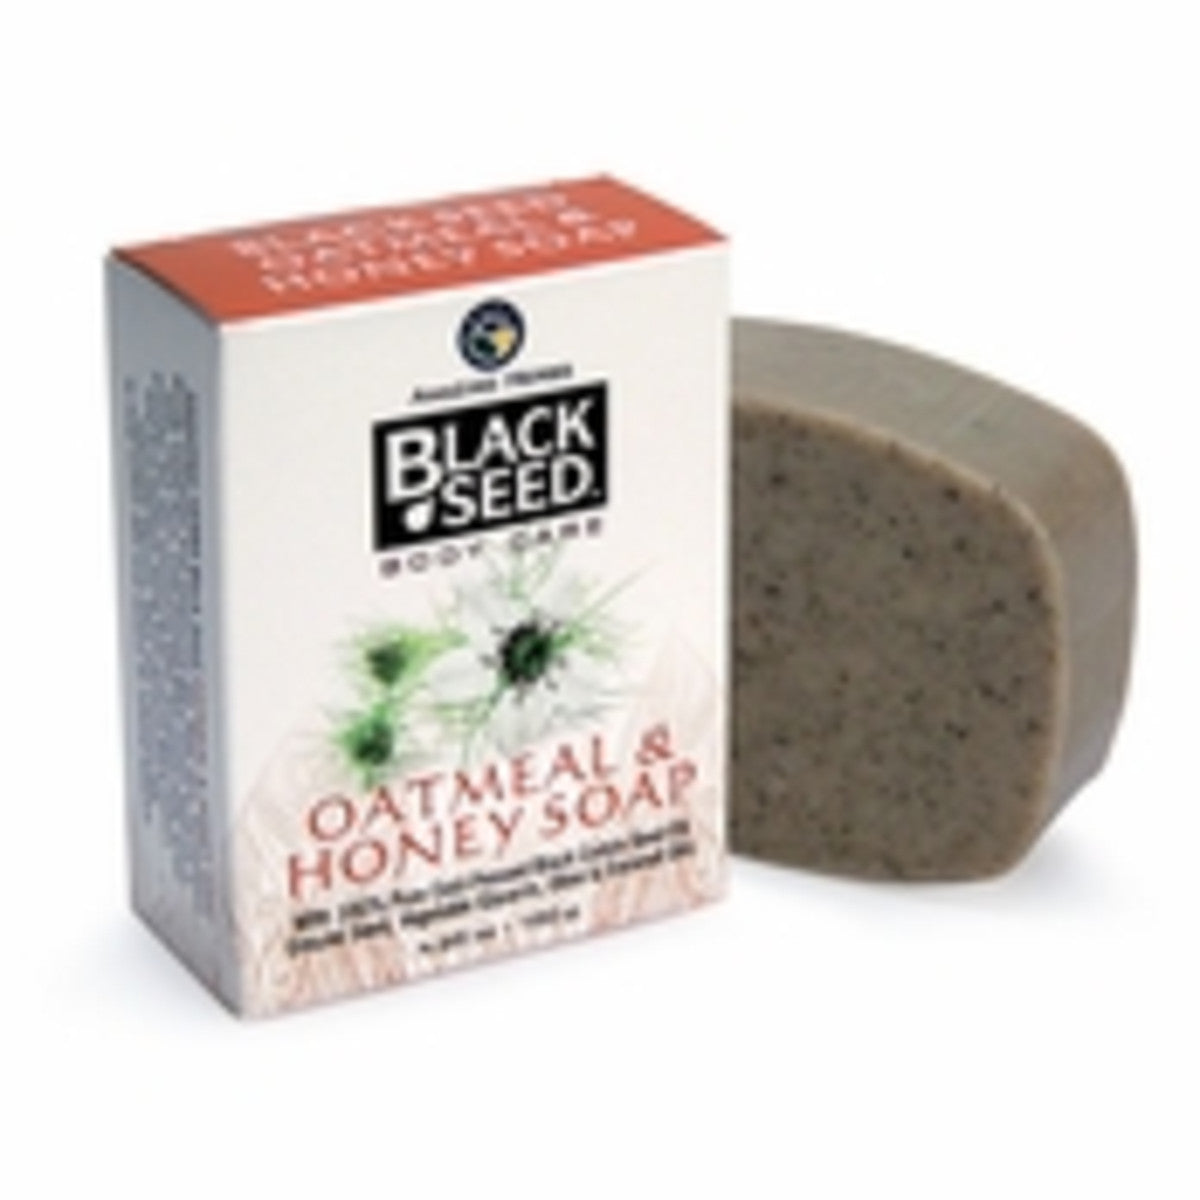 Black Seed Oatmeal & Honey Soap 4.25oz